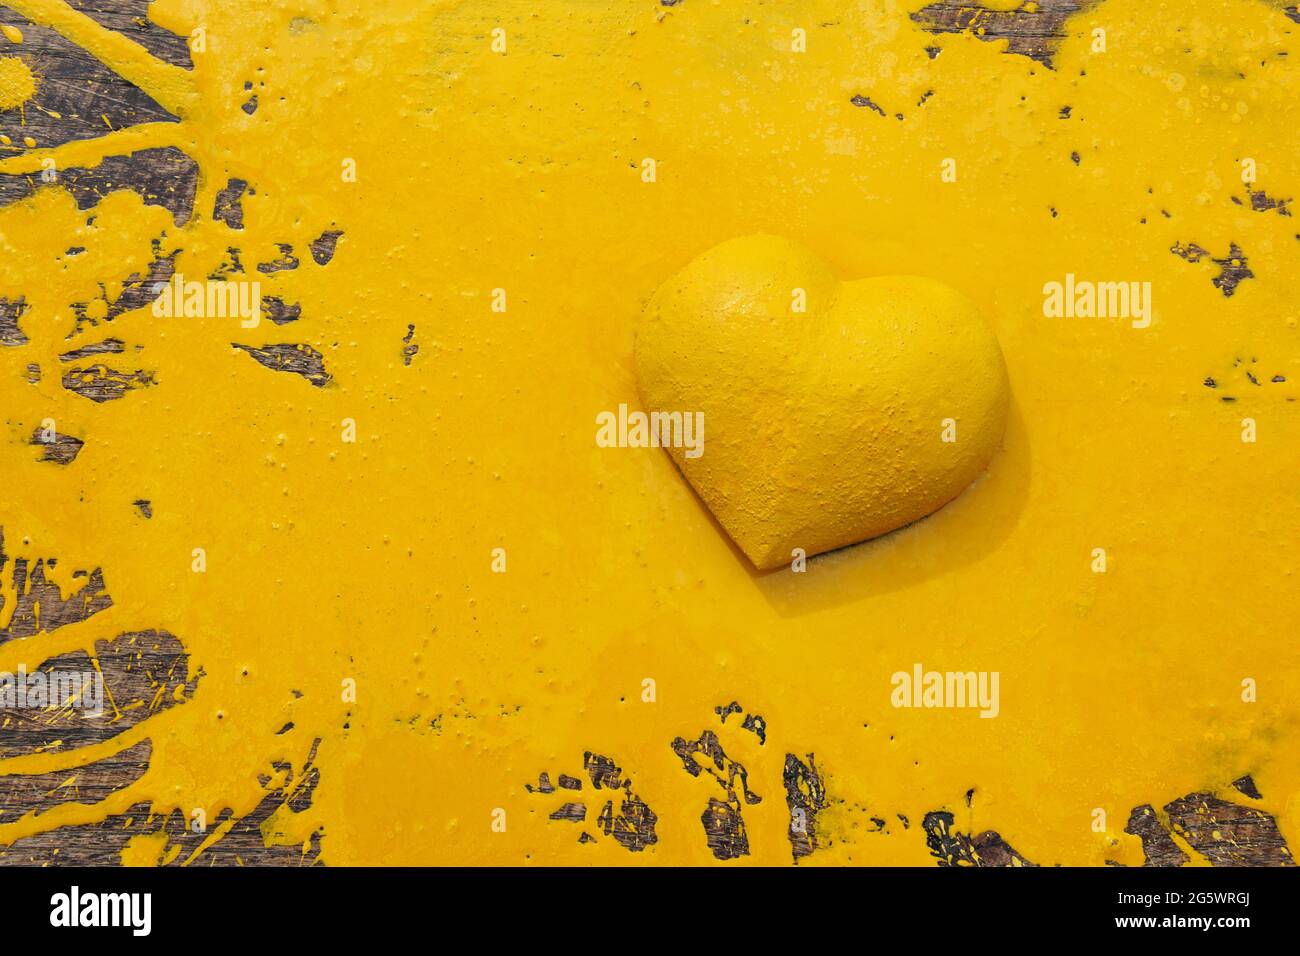 Erietta gialla. Forma tridimensionale del cuore su tavola in legno naturale frantumata da vernice gialla. Foto Stock